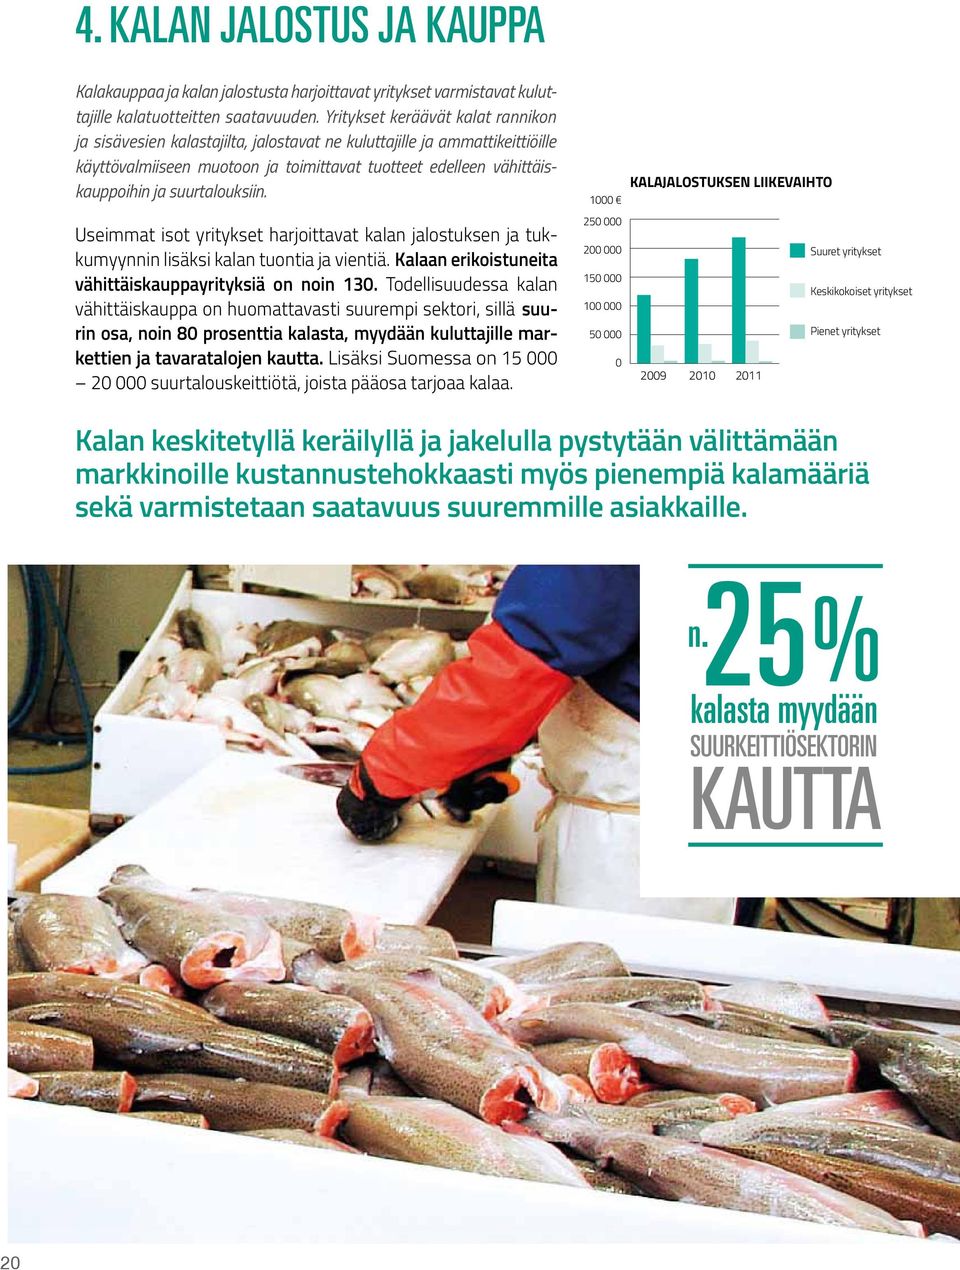 suurtalouksiin. Useimmat isot yritykset harjoittavat kalan jalostuksen ja tukkumyynnin lisäksi kalan tuontia ja vientiä. Kalaan erikoistuneita vähittäiskauppayrityksiä on noin 13.